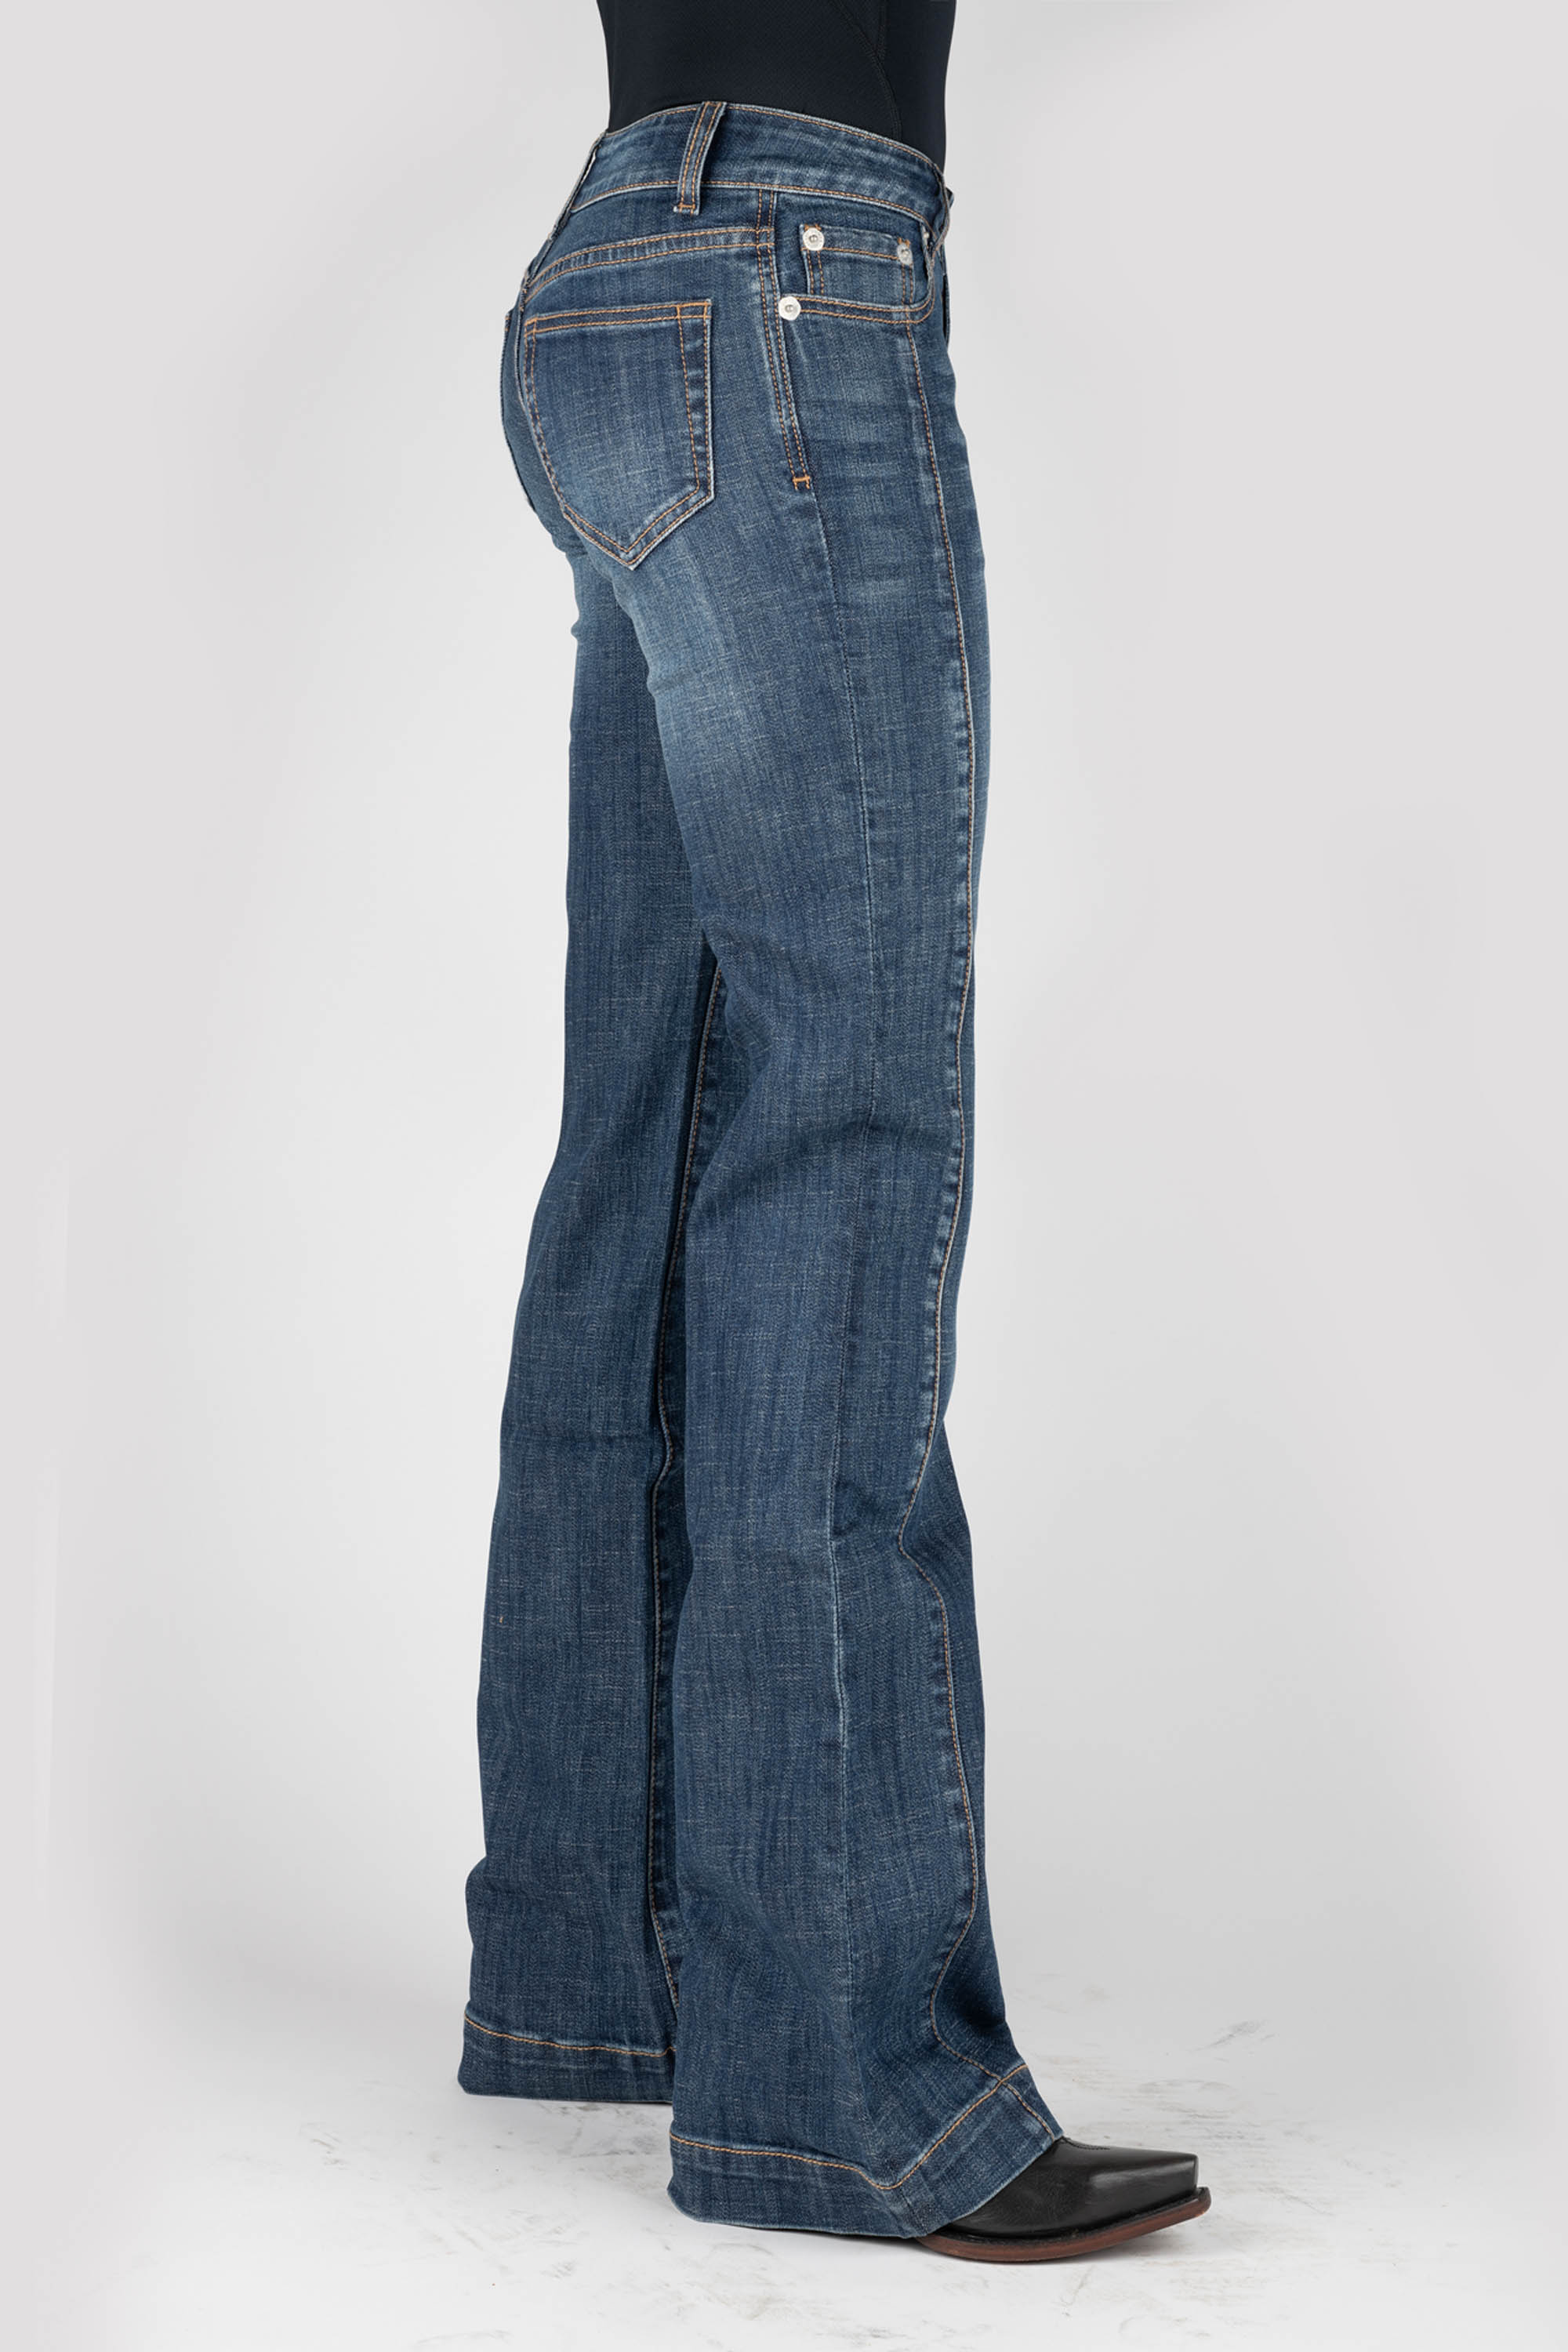 Stetson Women's Trouser Jean